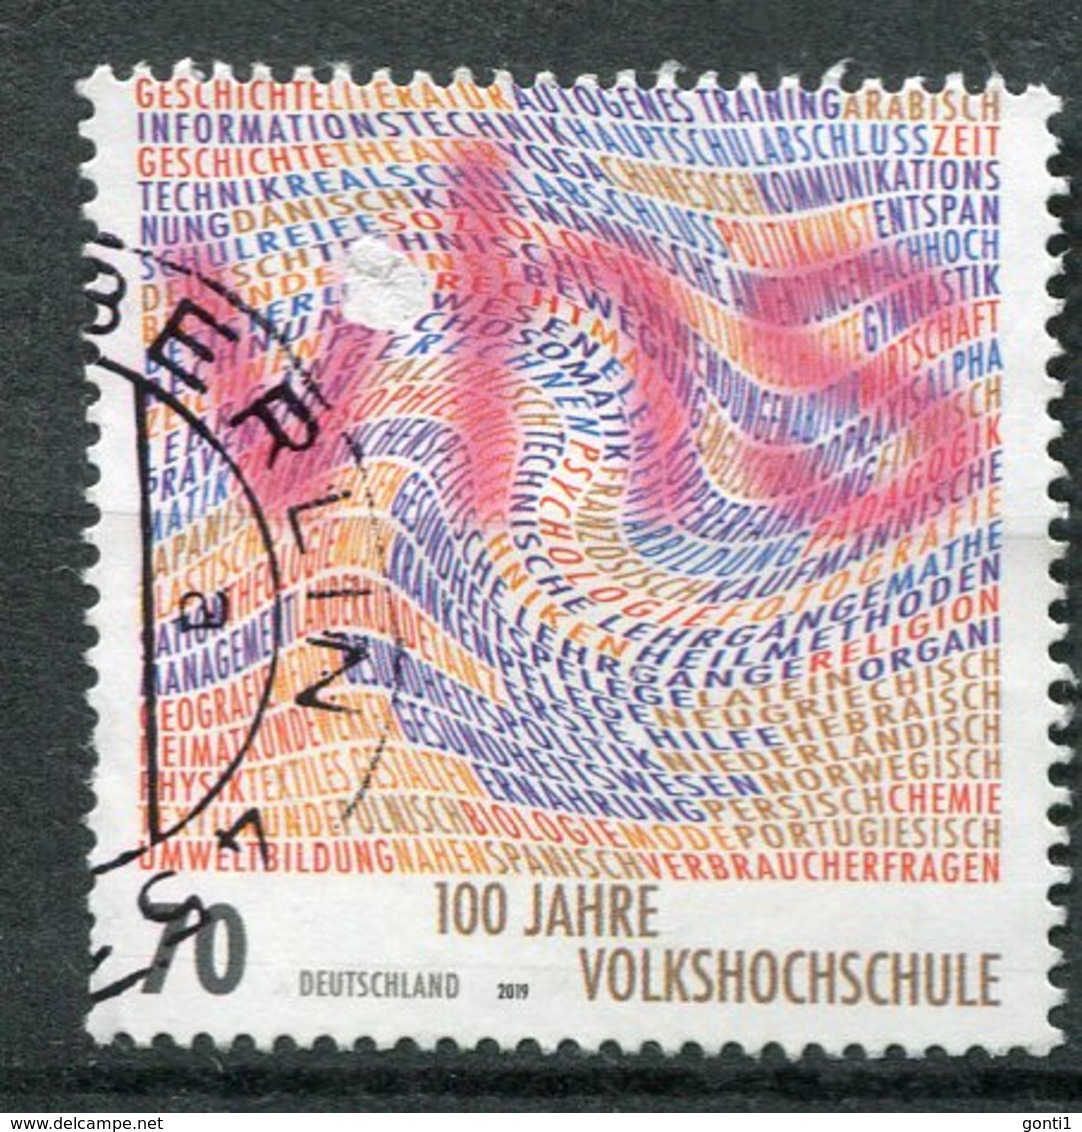 Germany 2019 Mi.Nr.3457 "100 Jahre Volkshochschule ."1 Wert Used - Used Stamps